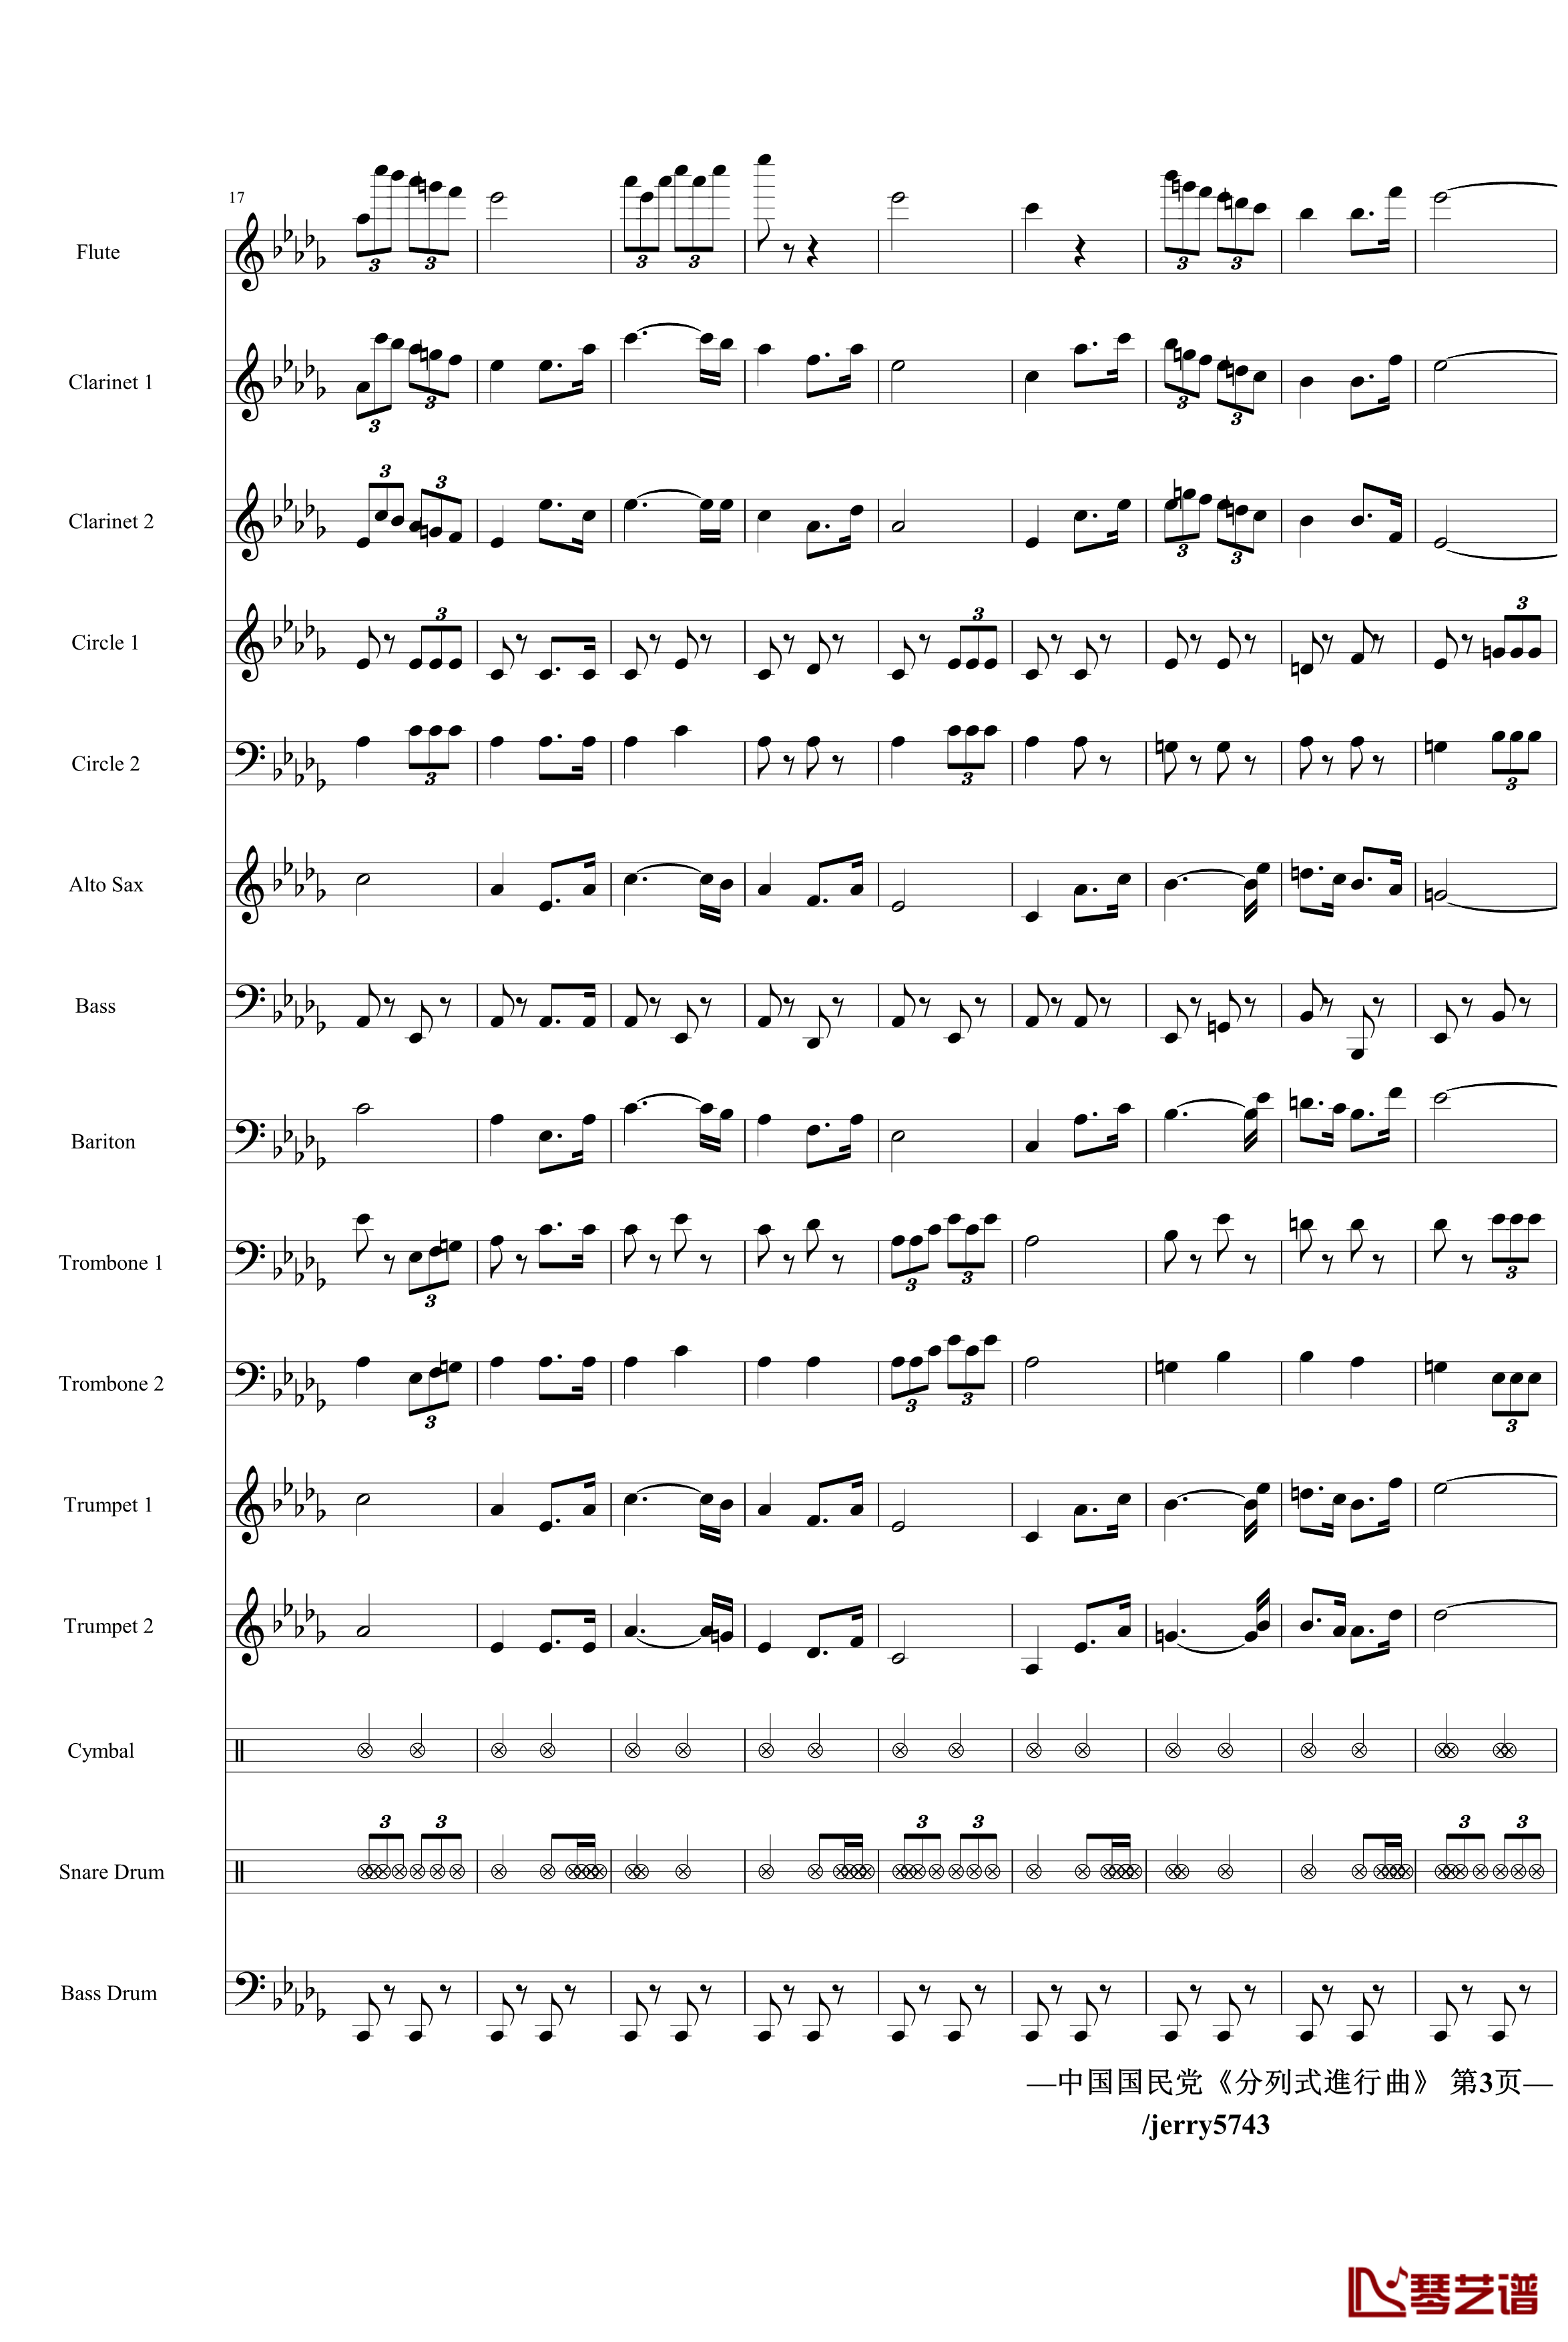 分列式進行曲钢琴谱-jerry5743出品-中国名曲3